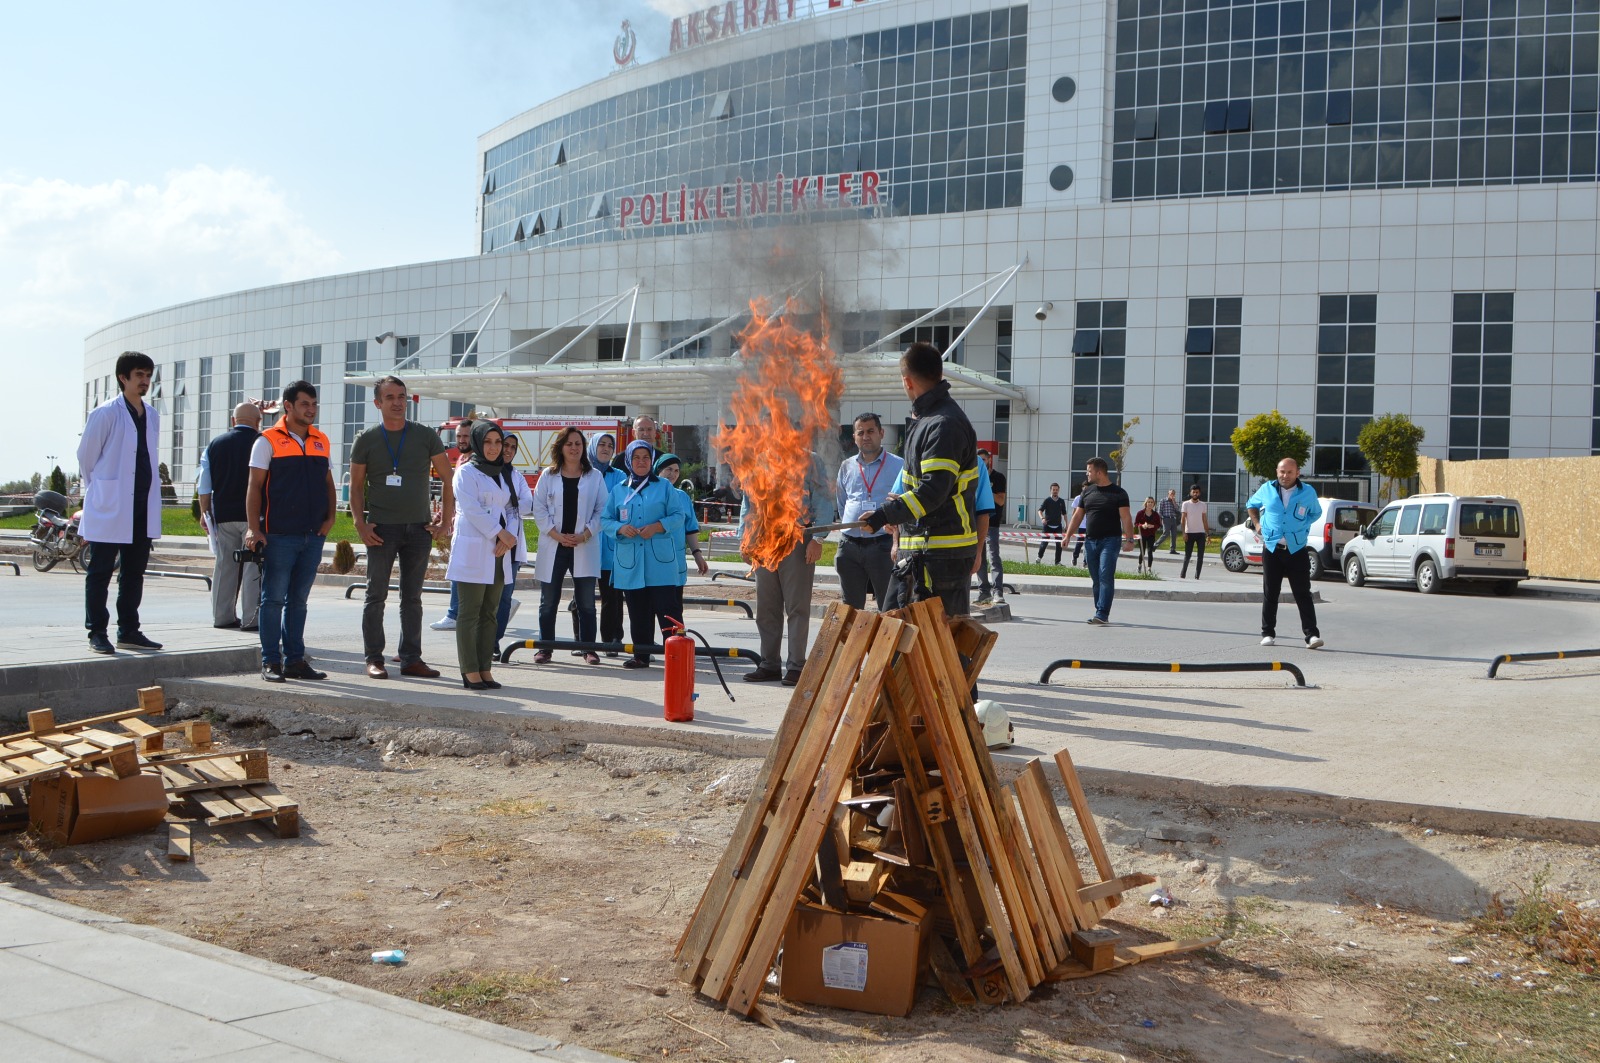 Aksaray Üniversitesi Egitim ve Araştırma Hastanesinde yangın tatbikatı yapıldı